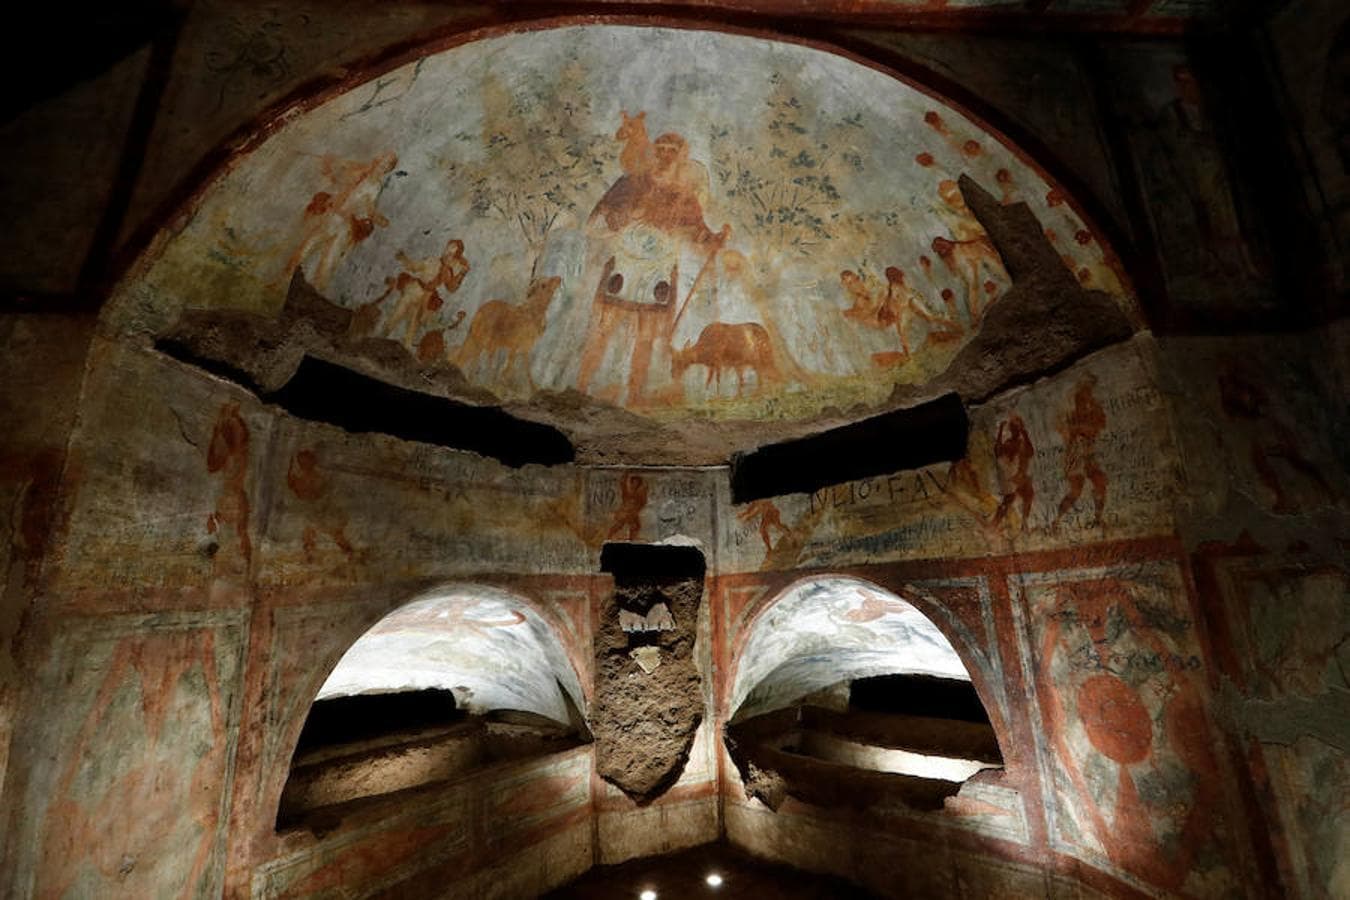 Uno de los grandes frescos refleja la que se cree que es una parábola del buen pastor y en otro arco de la bóveda los doce apóstoles junto a Jesús.